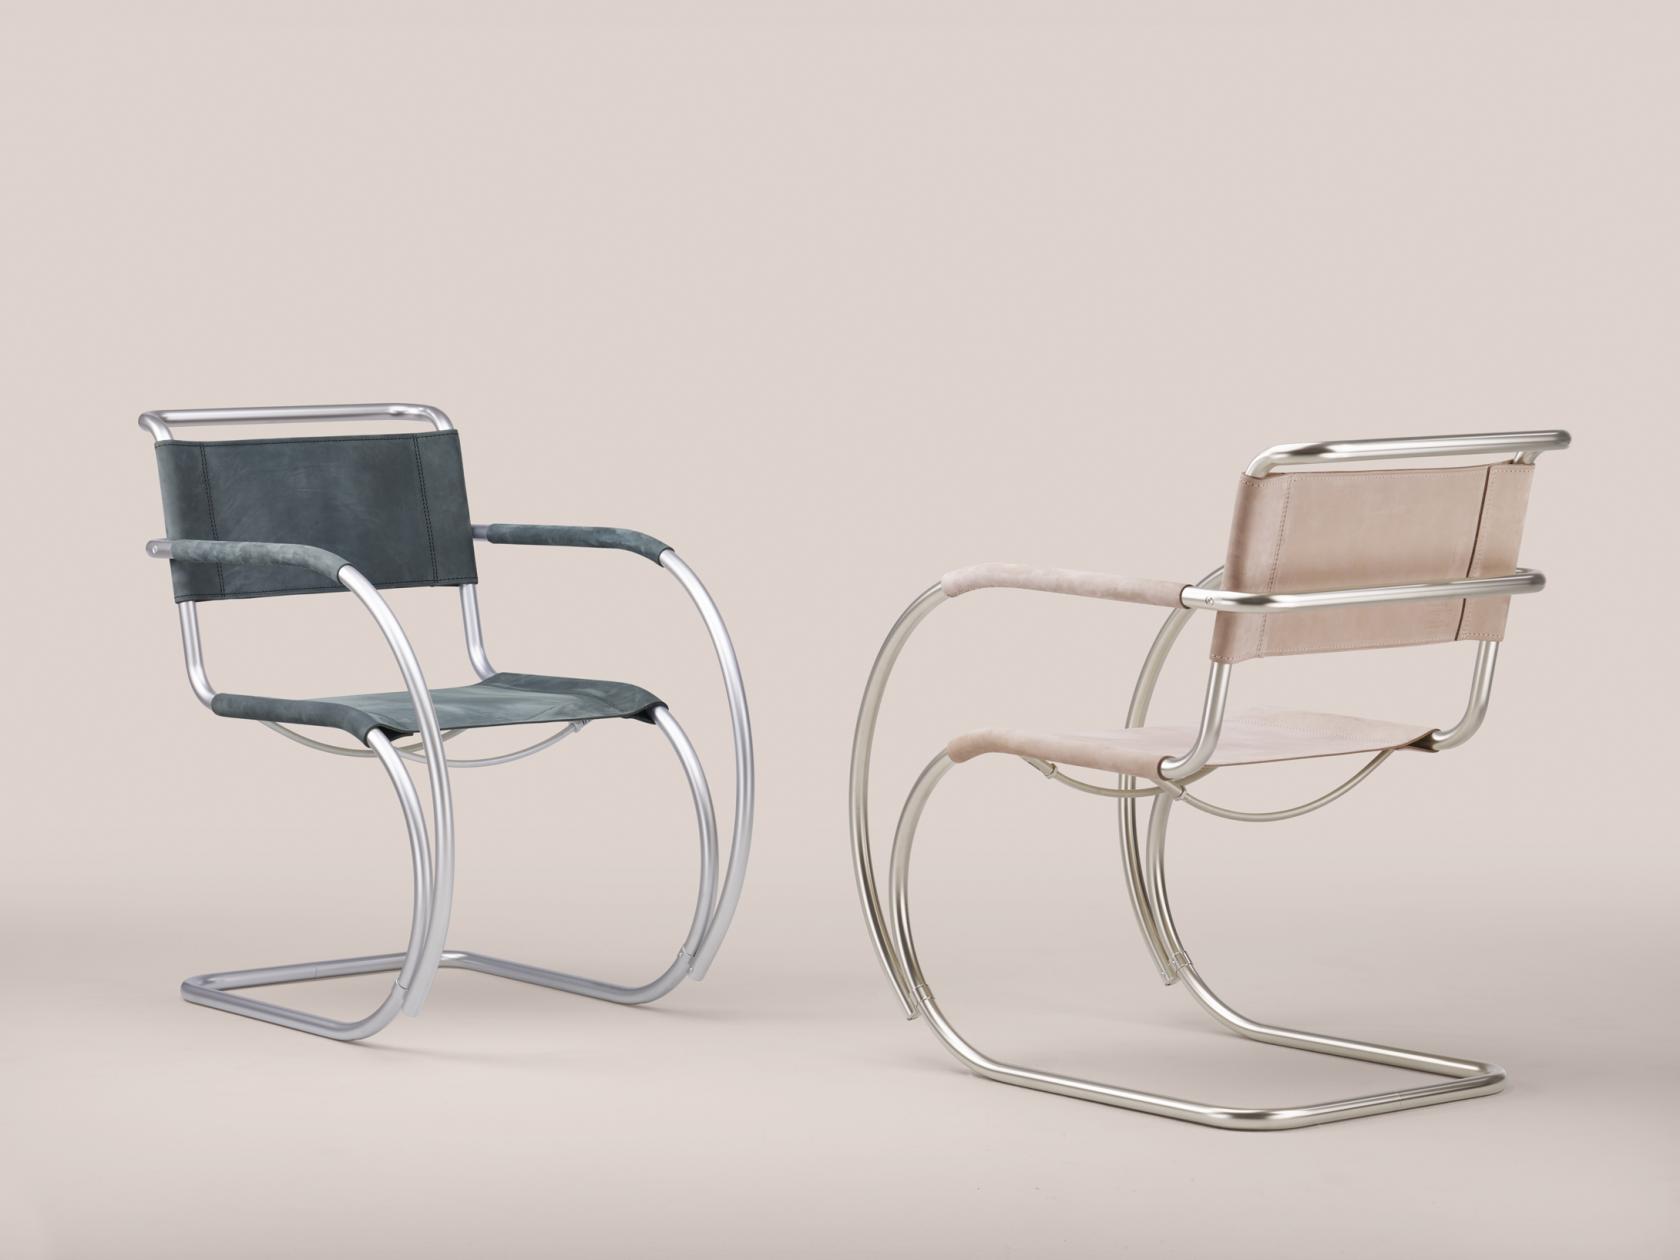 包豪斯经典533f椅子再设计,为其注入了当代奢华元素